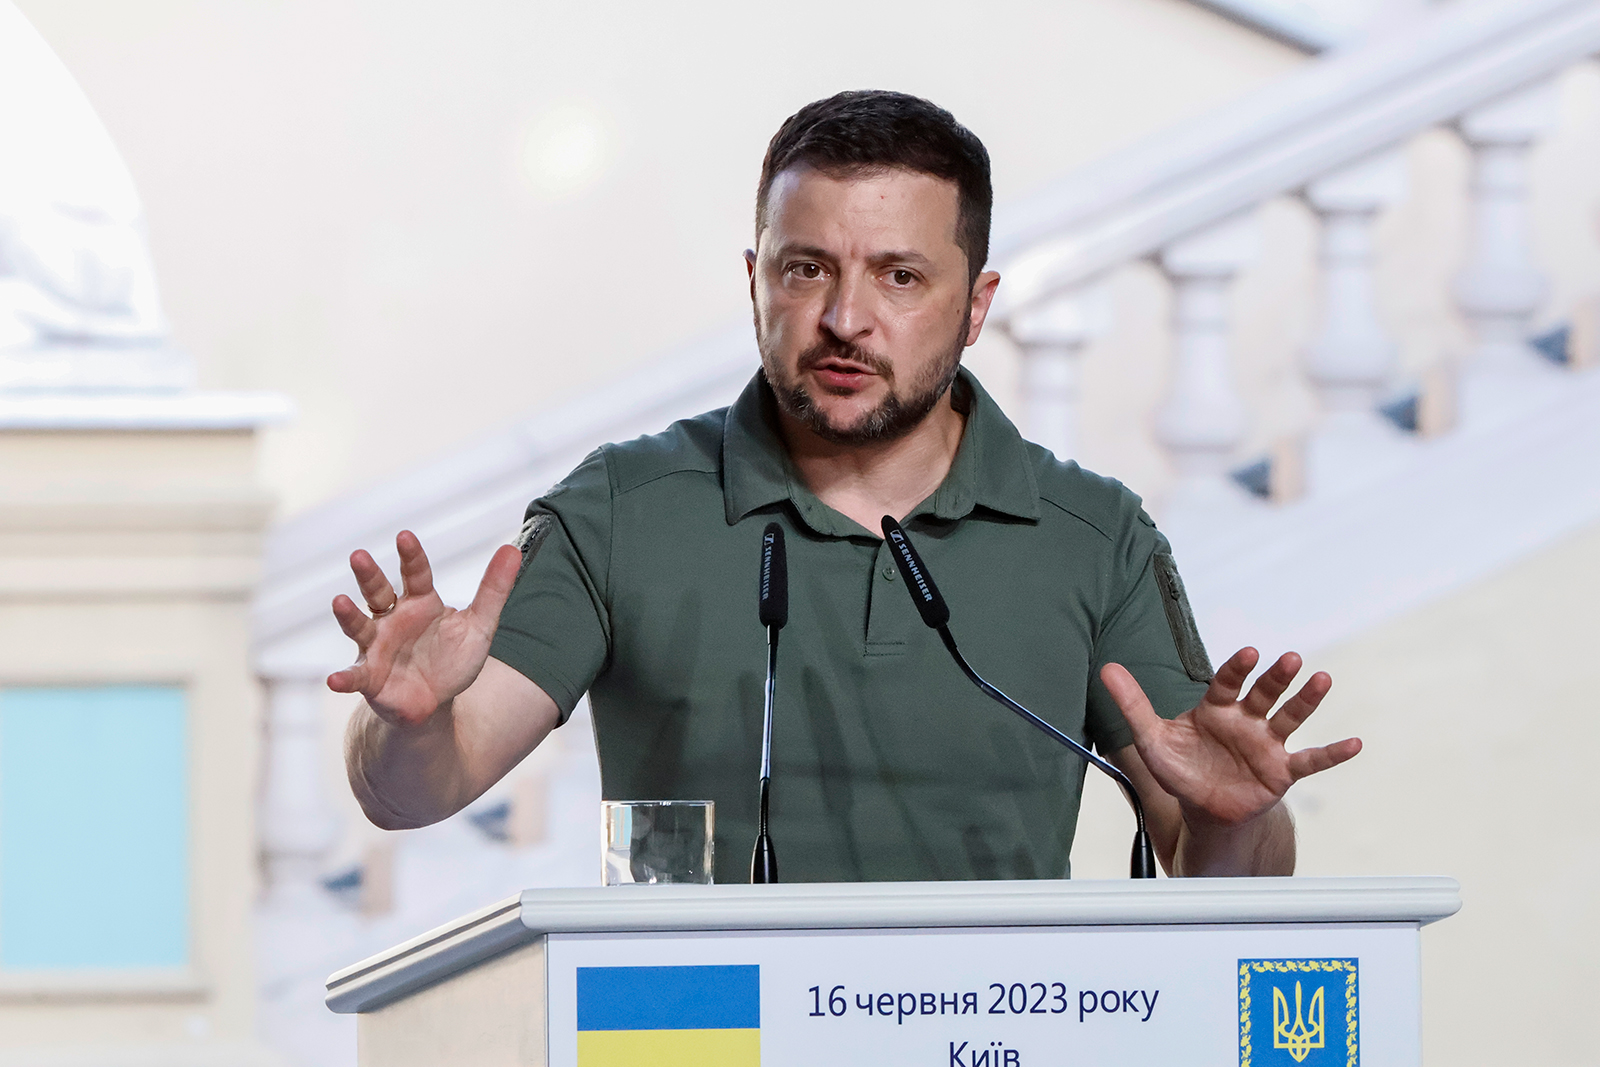 Volodymyr Zelensky attends a press conference in Kyiv, Ukraine on June 16.